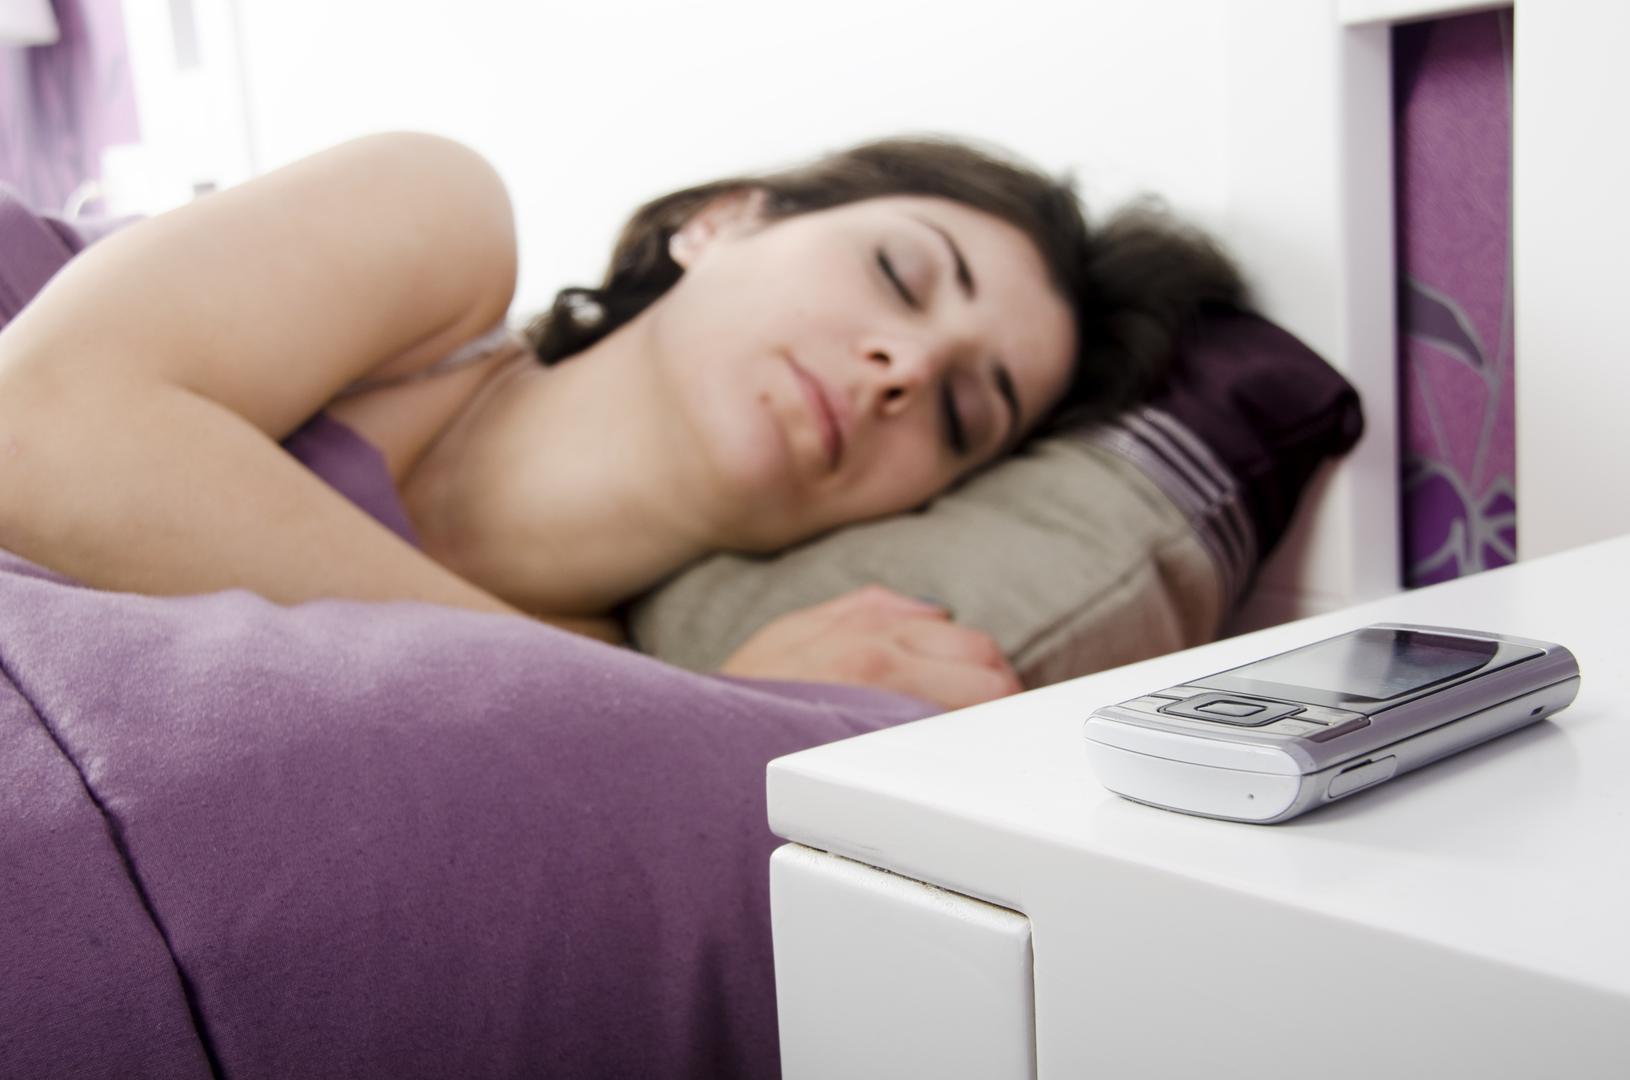 Istraživanje je pokazalo kako žene koje su spavale kraj umjetnog svjetla imaju 17 posto veće šanse da će se udebljati 5 kilograma ili više u idućih pet godina. Također, šanse da će imati prekomjernu težinu su 22 posto, a 33 posto da će biti pretile.